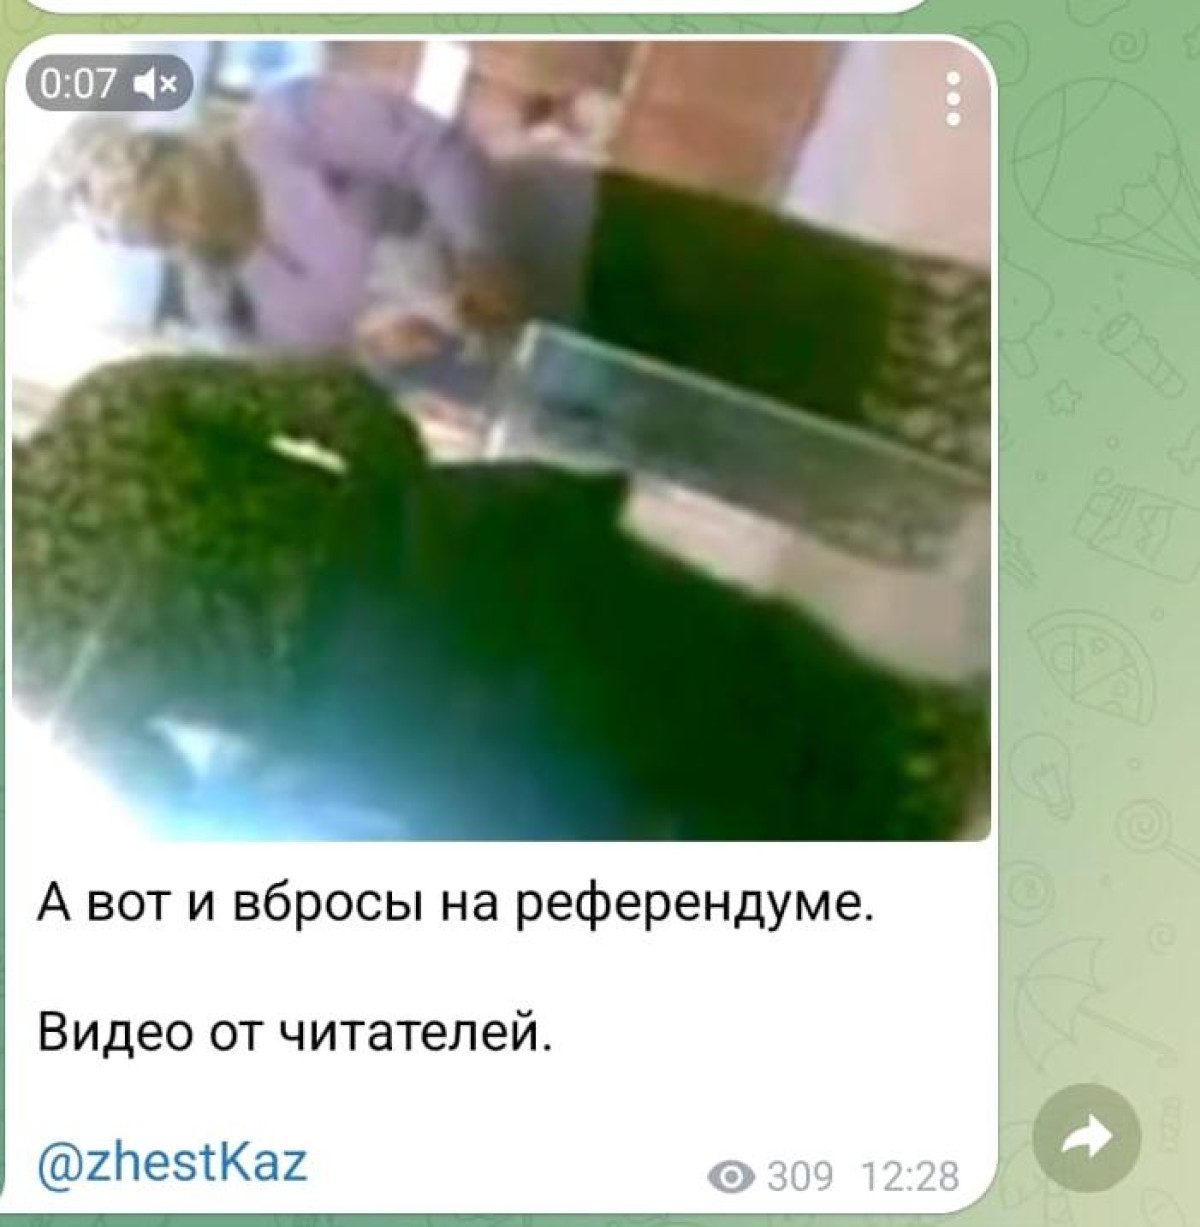 В Казнете распространяют старое видео вброса бюллетеней, снятое не в Казахстане